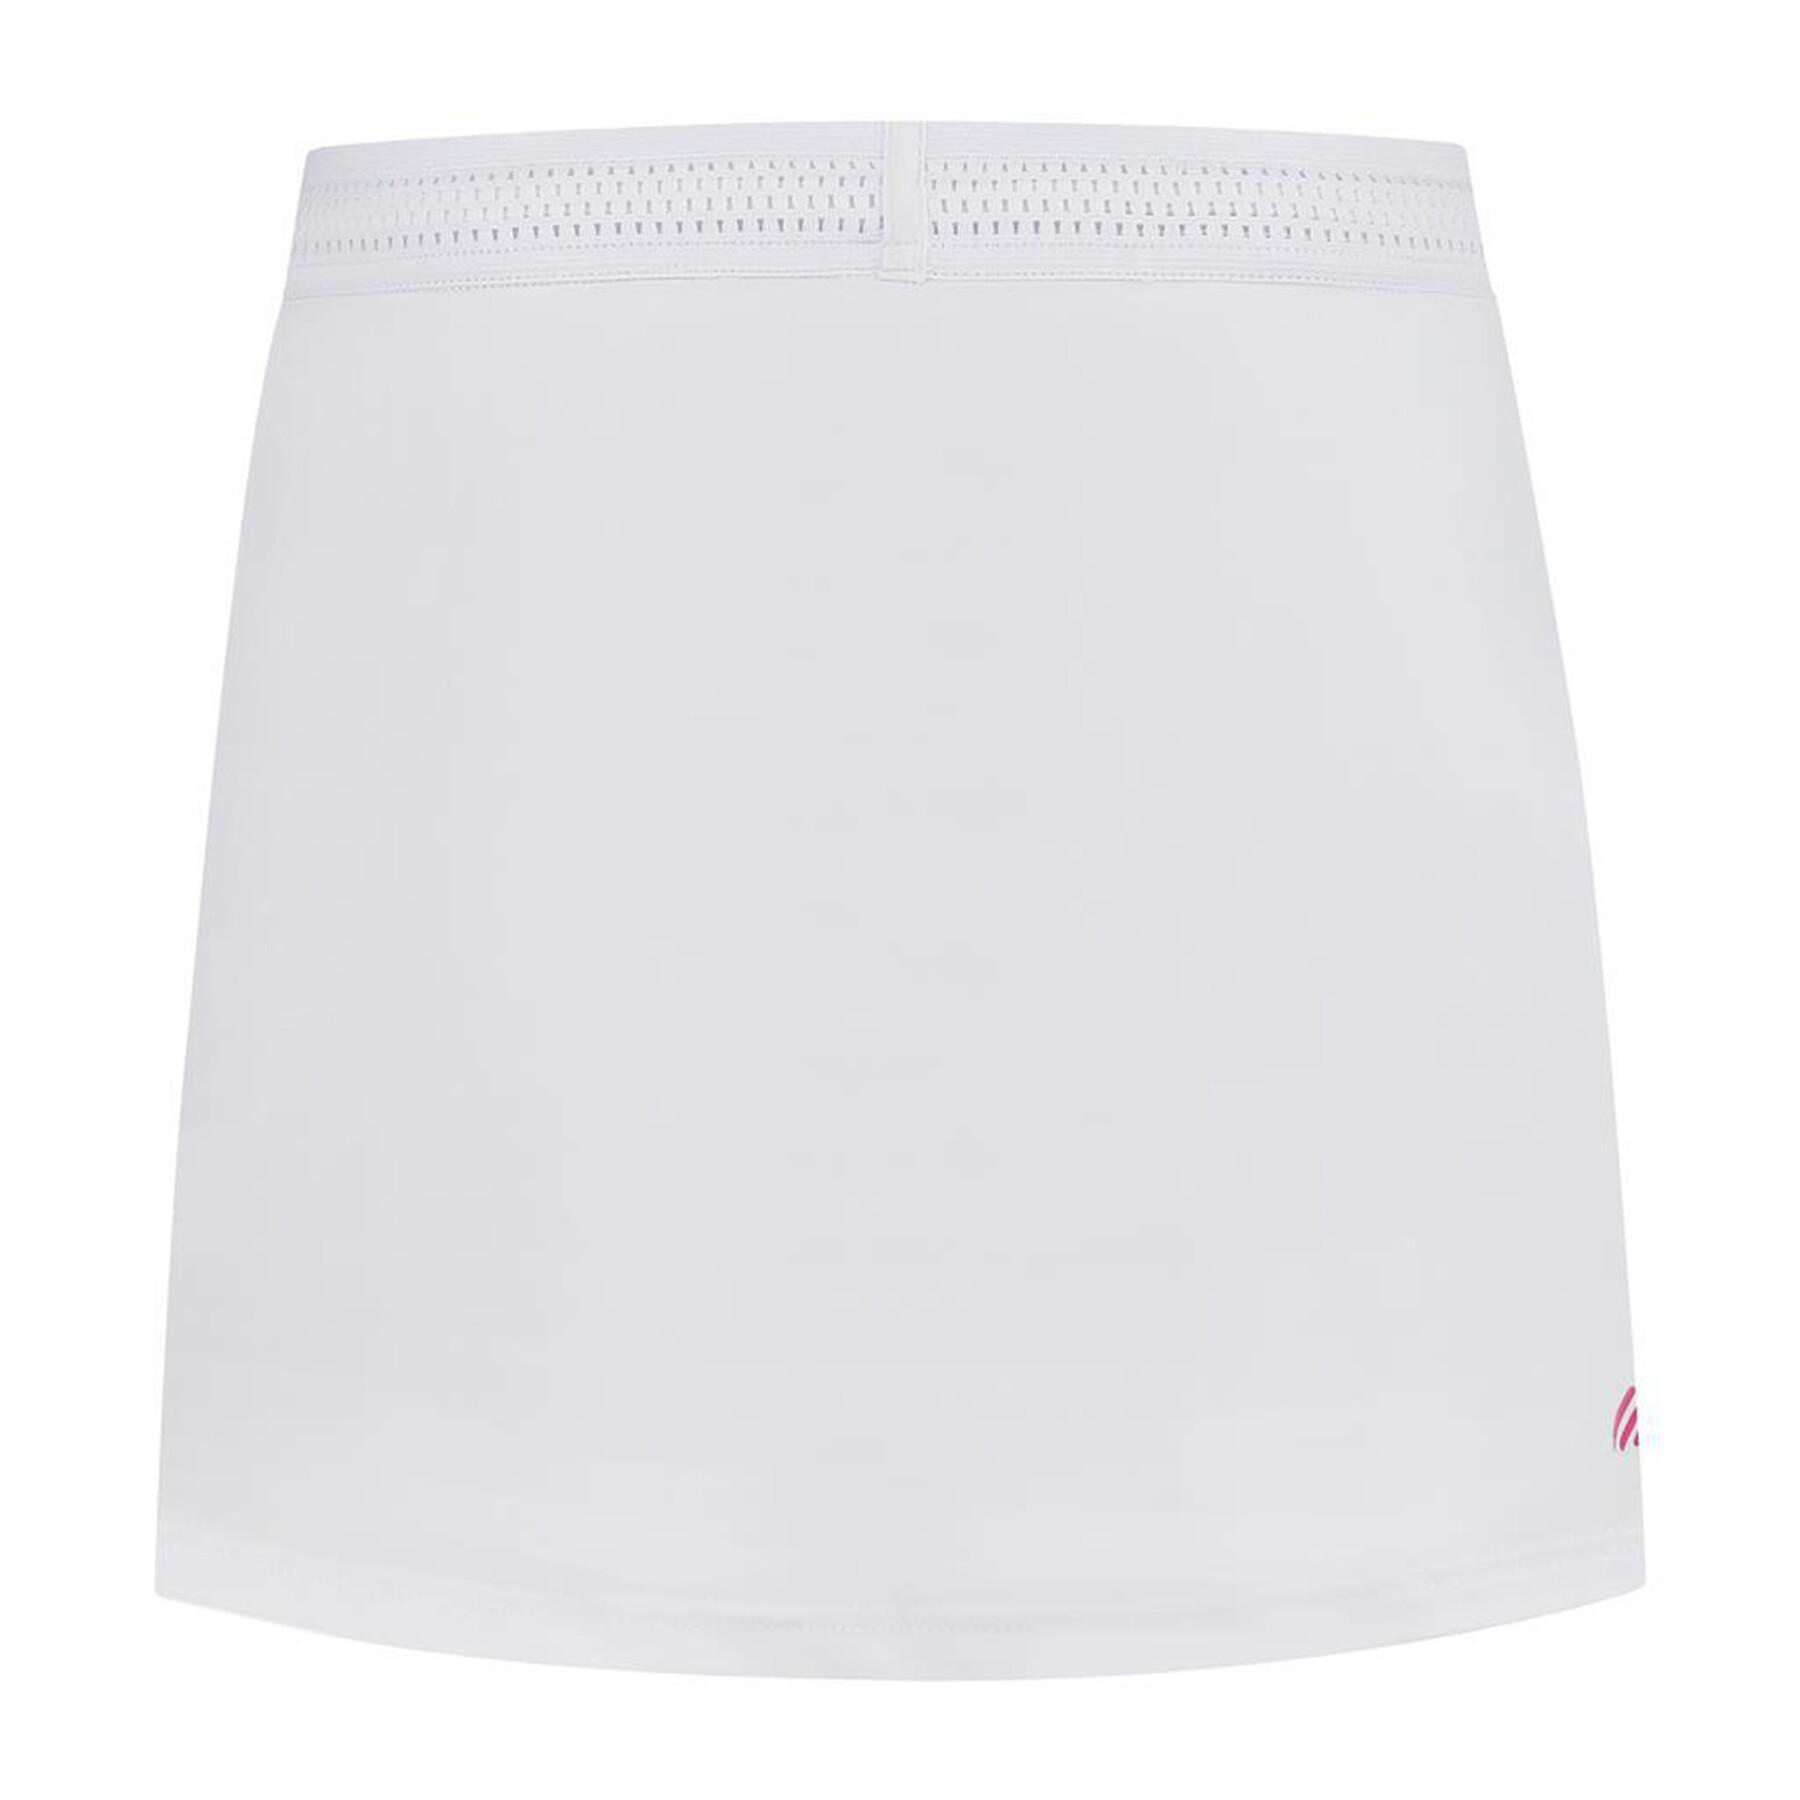 Women's skirt K-Swiss hypercourt express 2